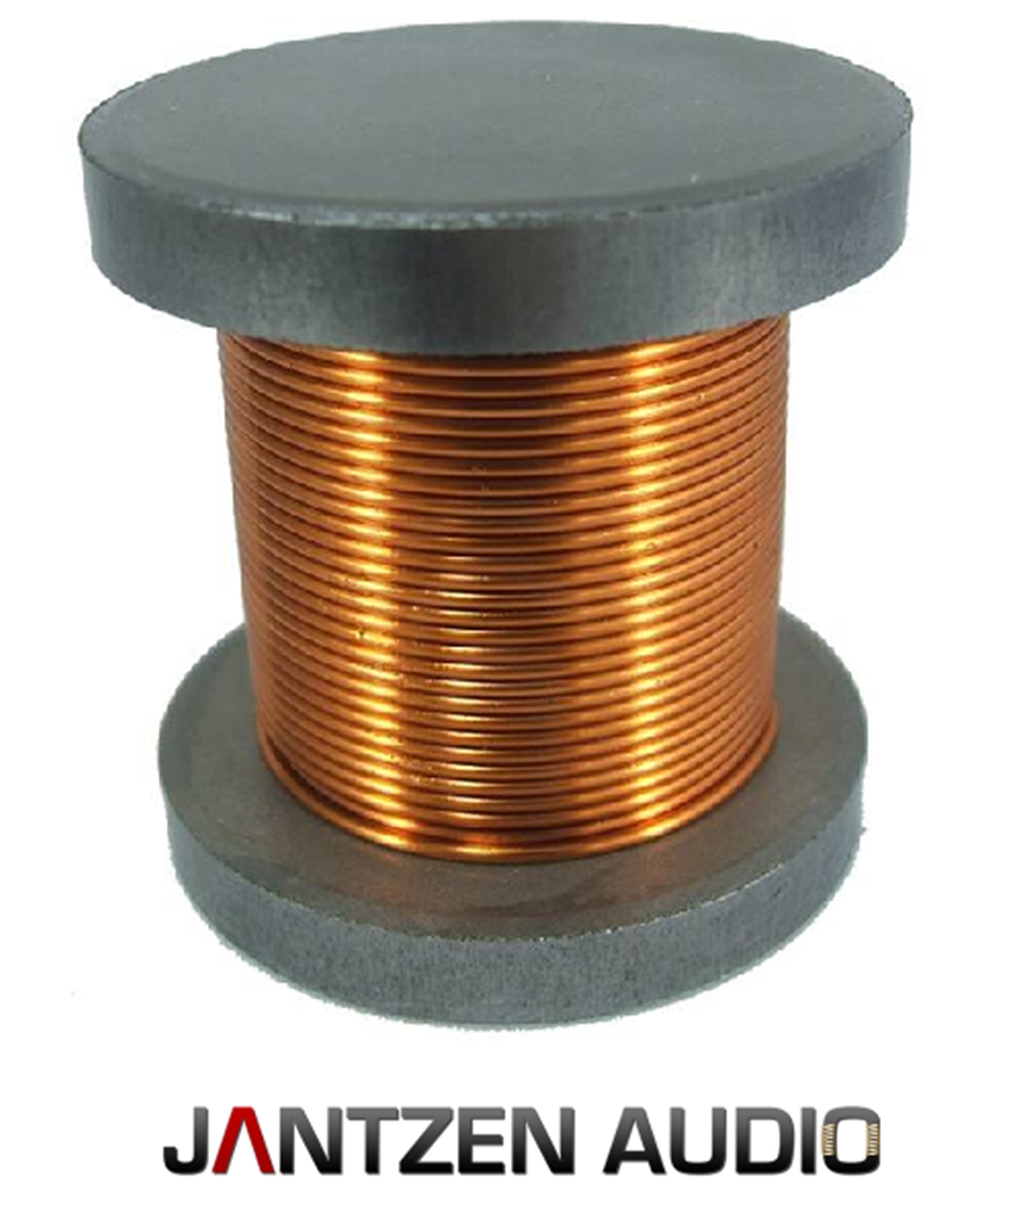 Катушка индуктивности 0 3 мгн. Катушка индуктивности Jantzen Iron Core Coil + Discs. Катушка индуктивности bn3m 20003a. Jantzen-Audio восковая катушка индуктор.